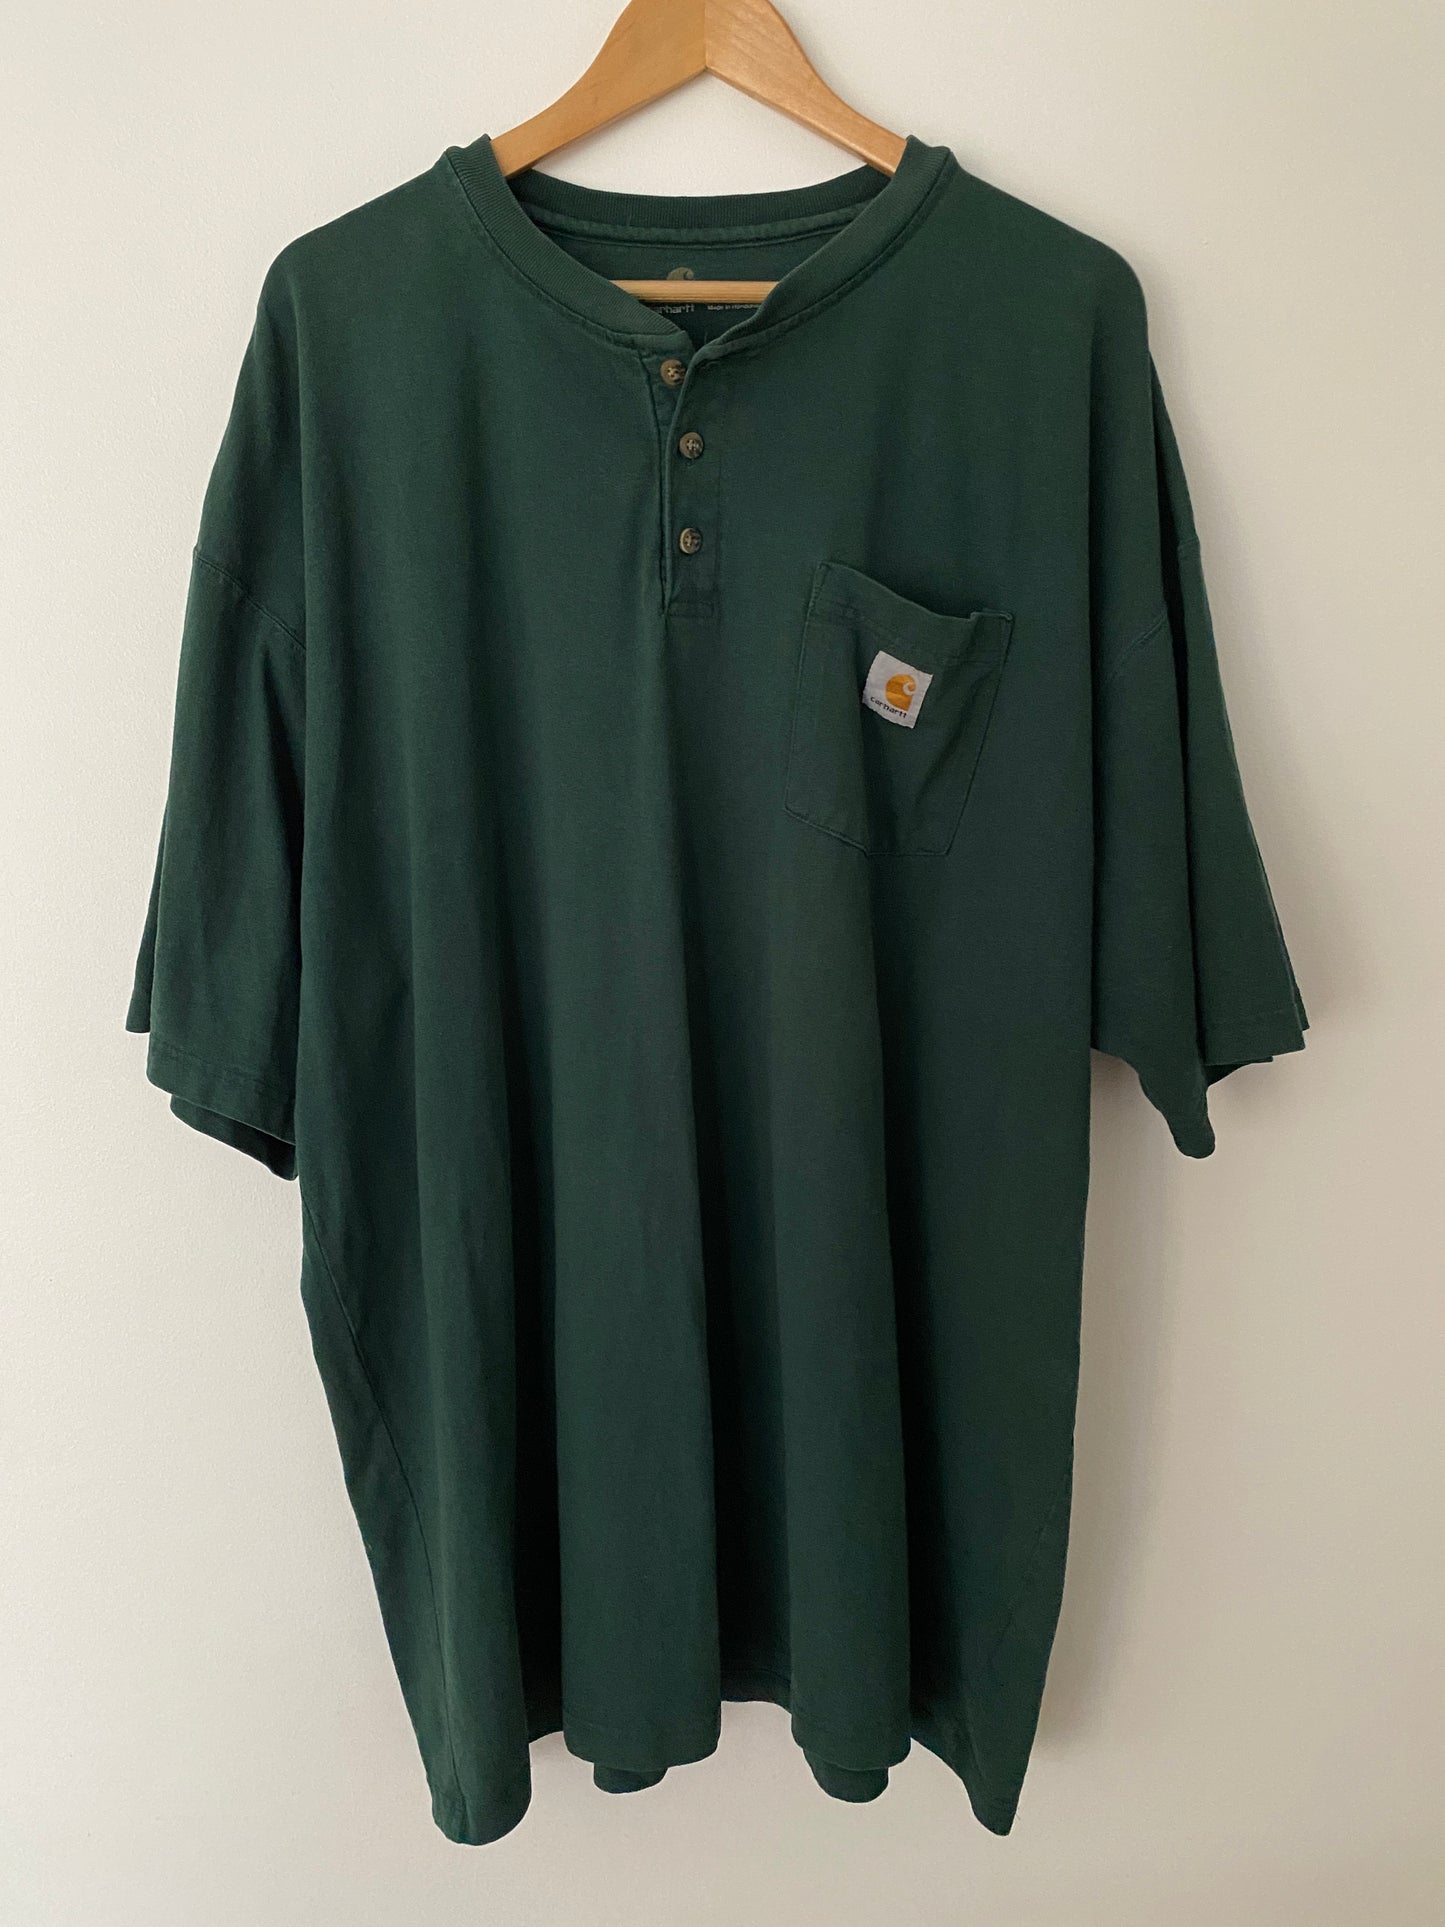 Carhartt Pocket Henley T-Shirt - 2XL Tall